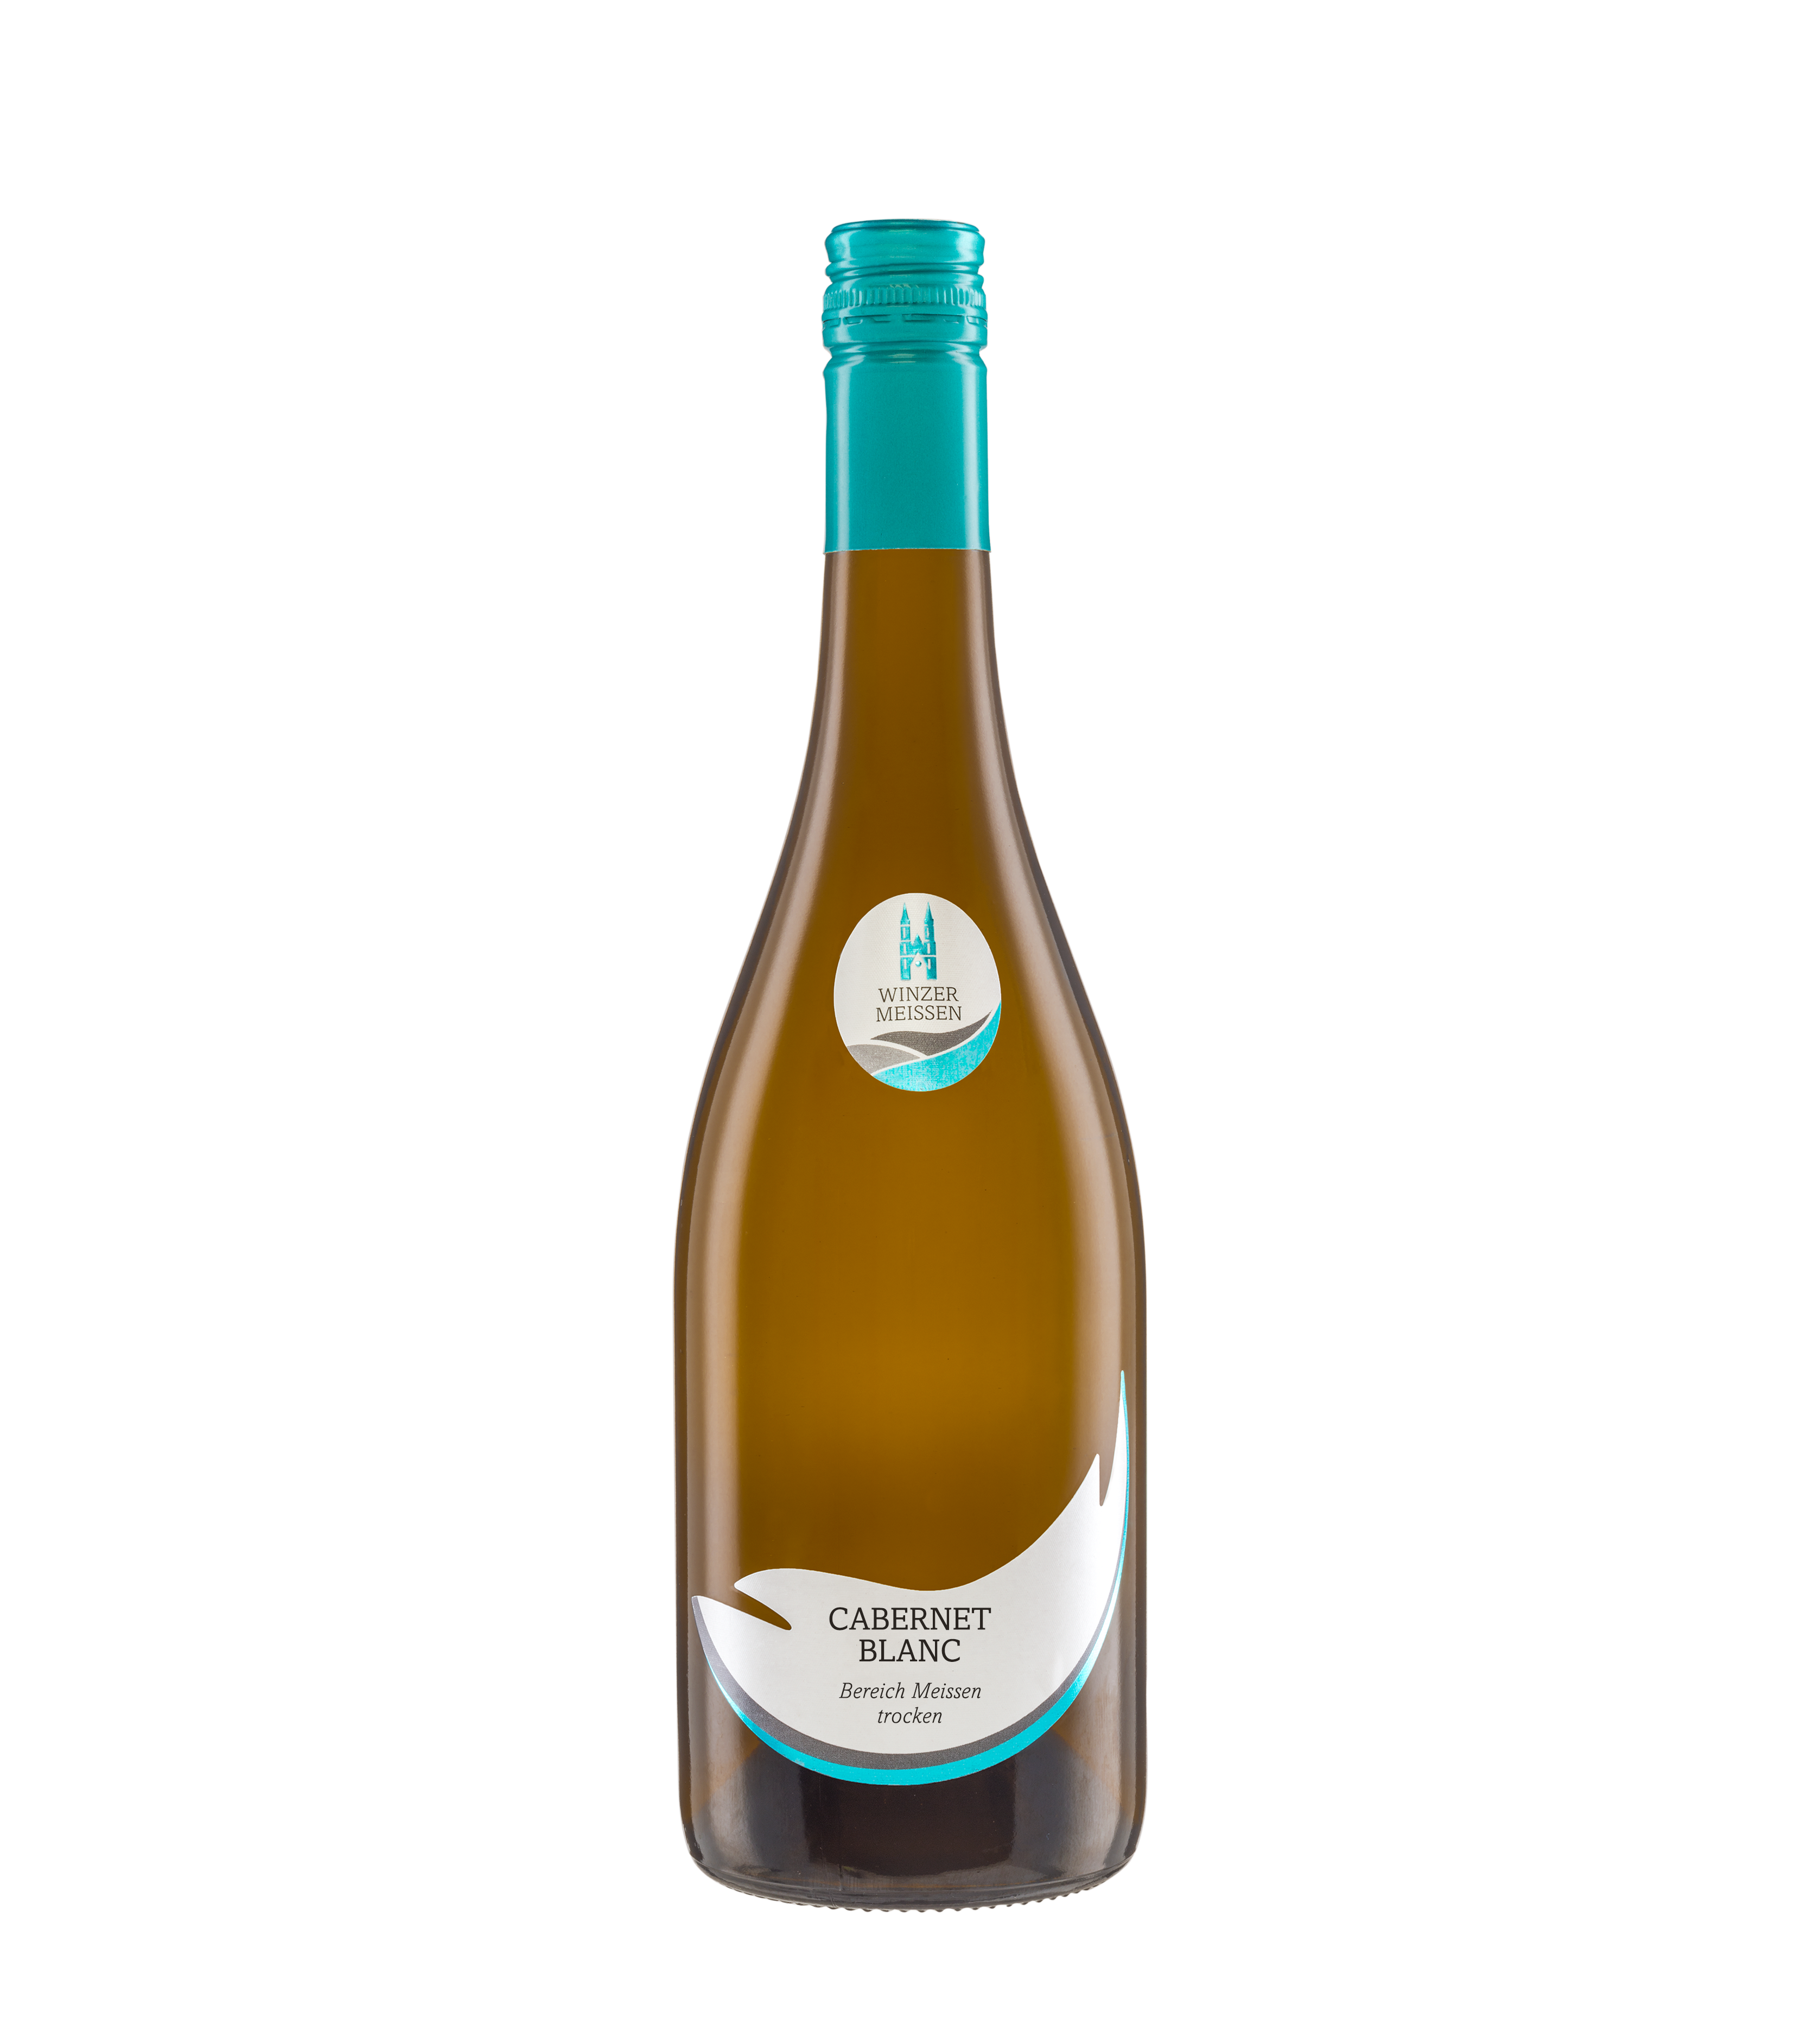 2021 Cabernet Blanc Qualitätswein Bereich Meißen trocken